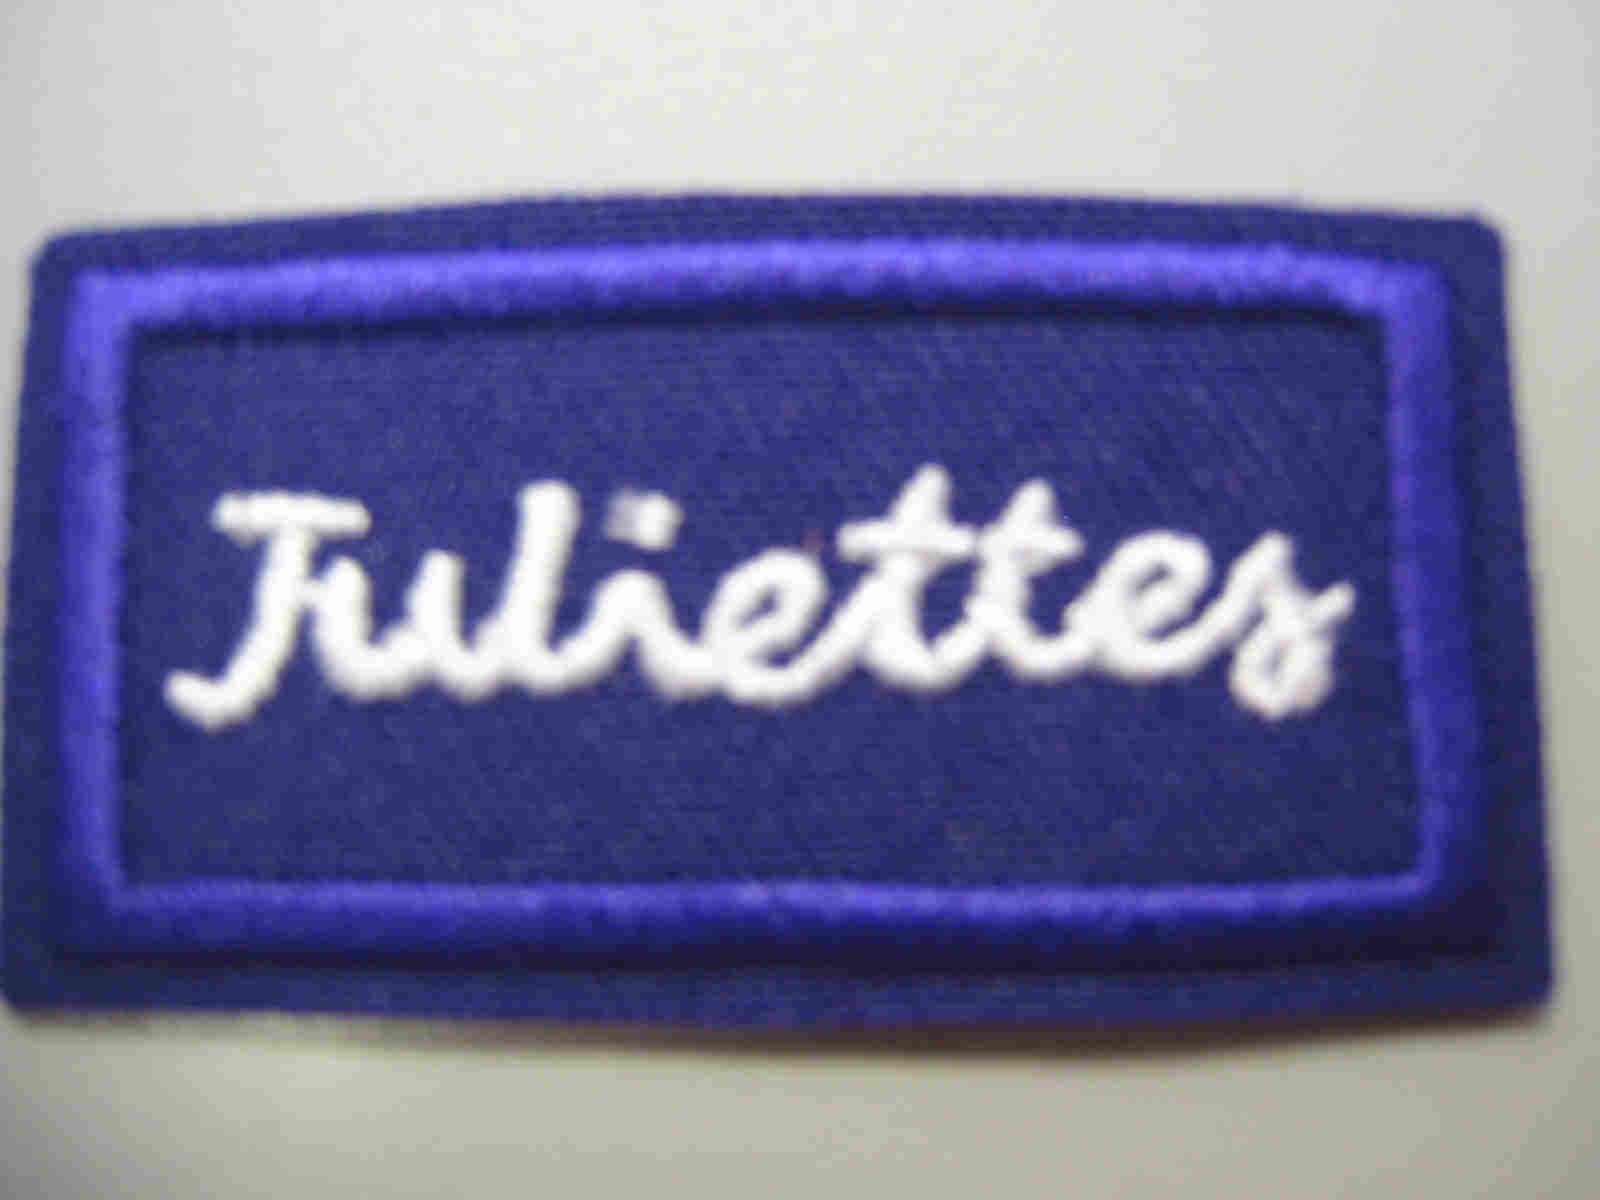 Juliette Program Girl Scout